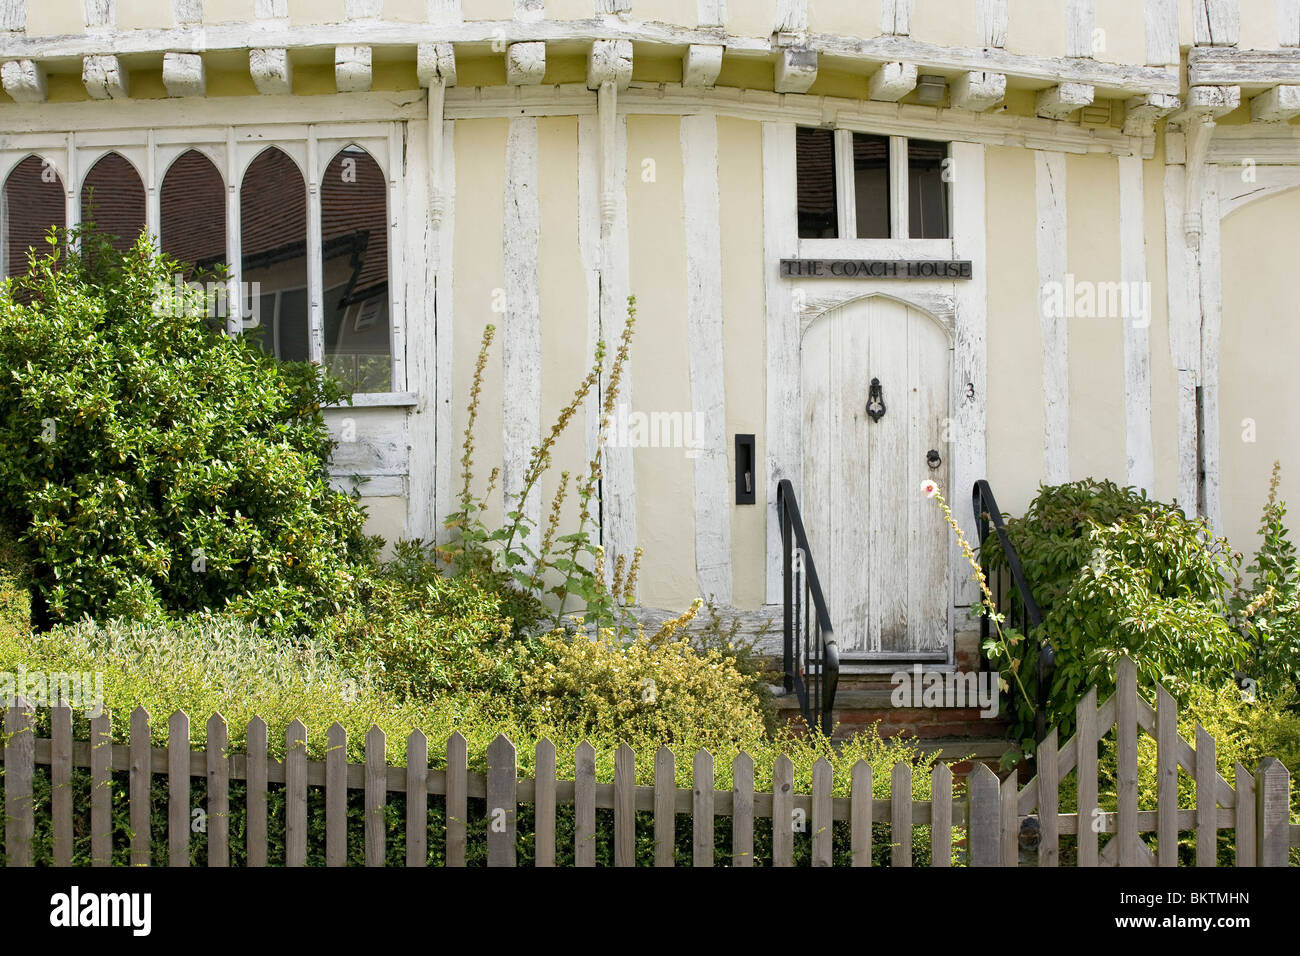 El "Coach House", una casa de marcos de madera pintada en blanco sobre Lady Street en Lavenham Foto de stock